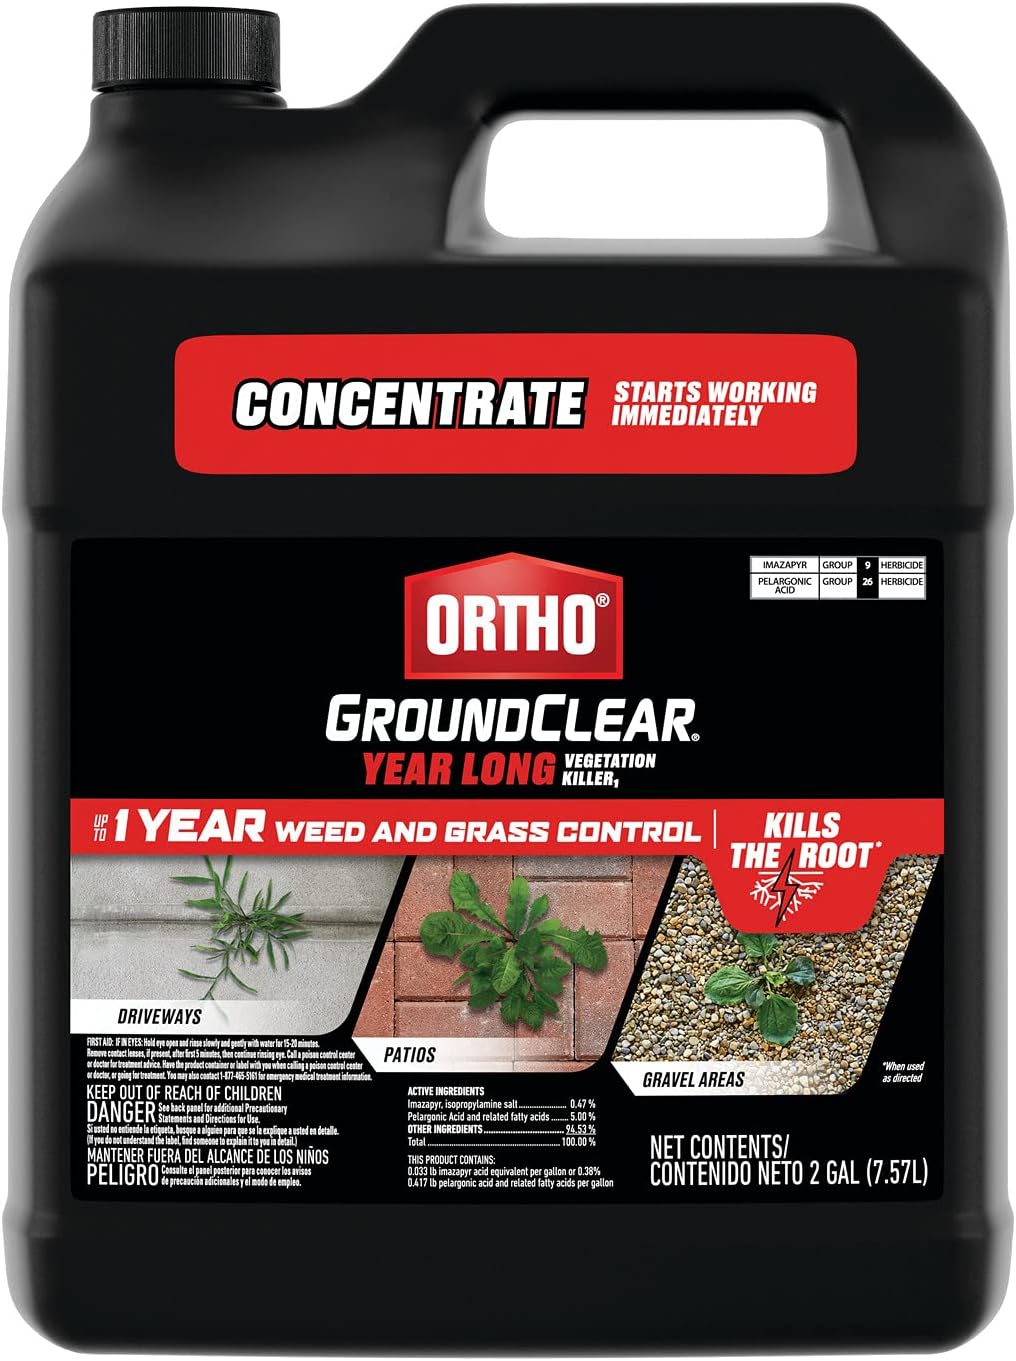 Ortho GroundClear Year Long Vegetation Killer1 - [...]